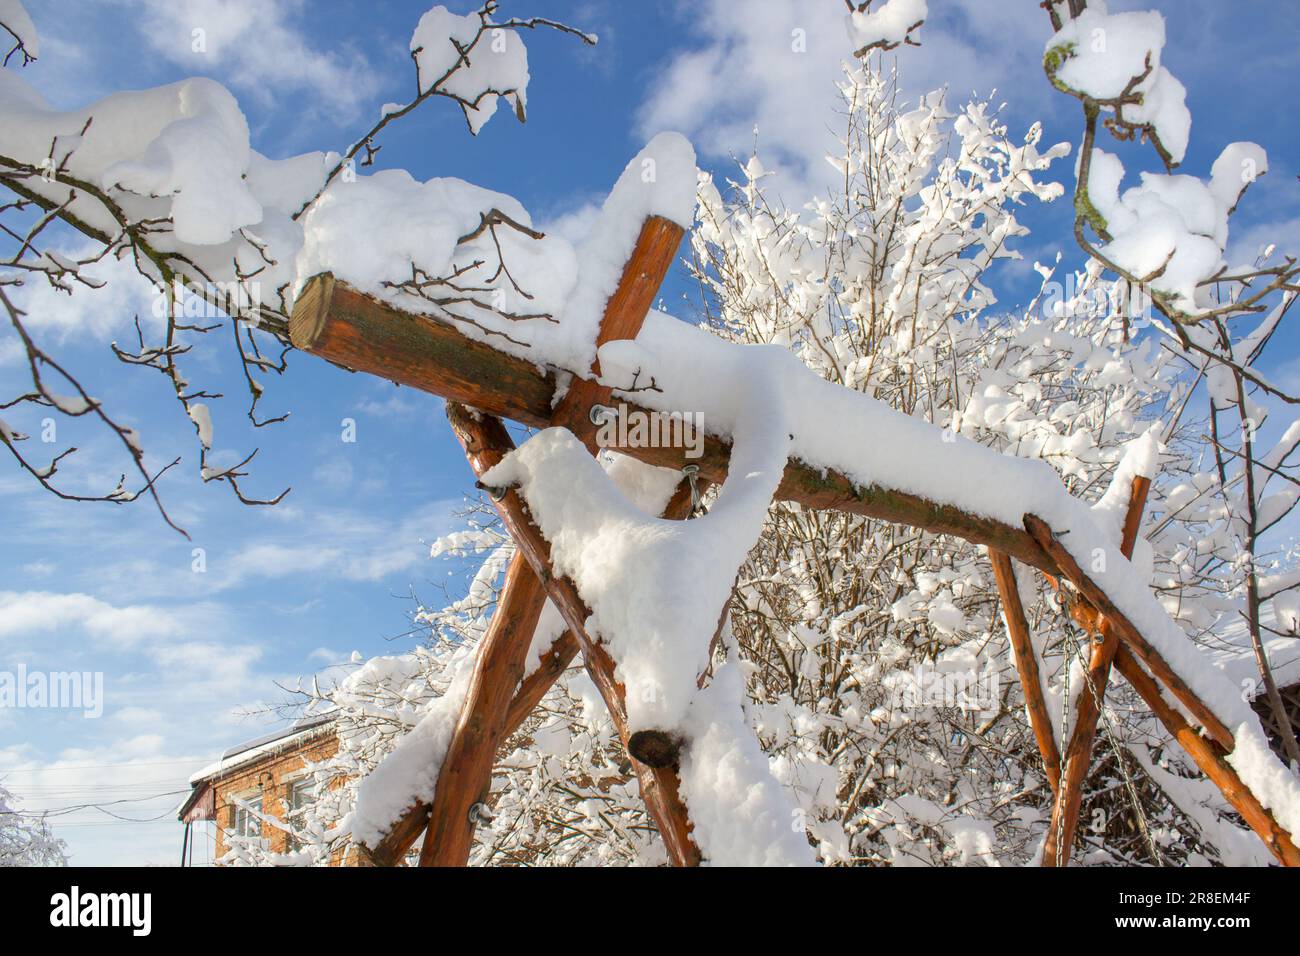 Fiaba invernale nel cortile, altalena da giardino coperta di neve. il giardino di legno oscilla sulle catene, tutto nella neve. Foto Stock